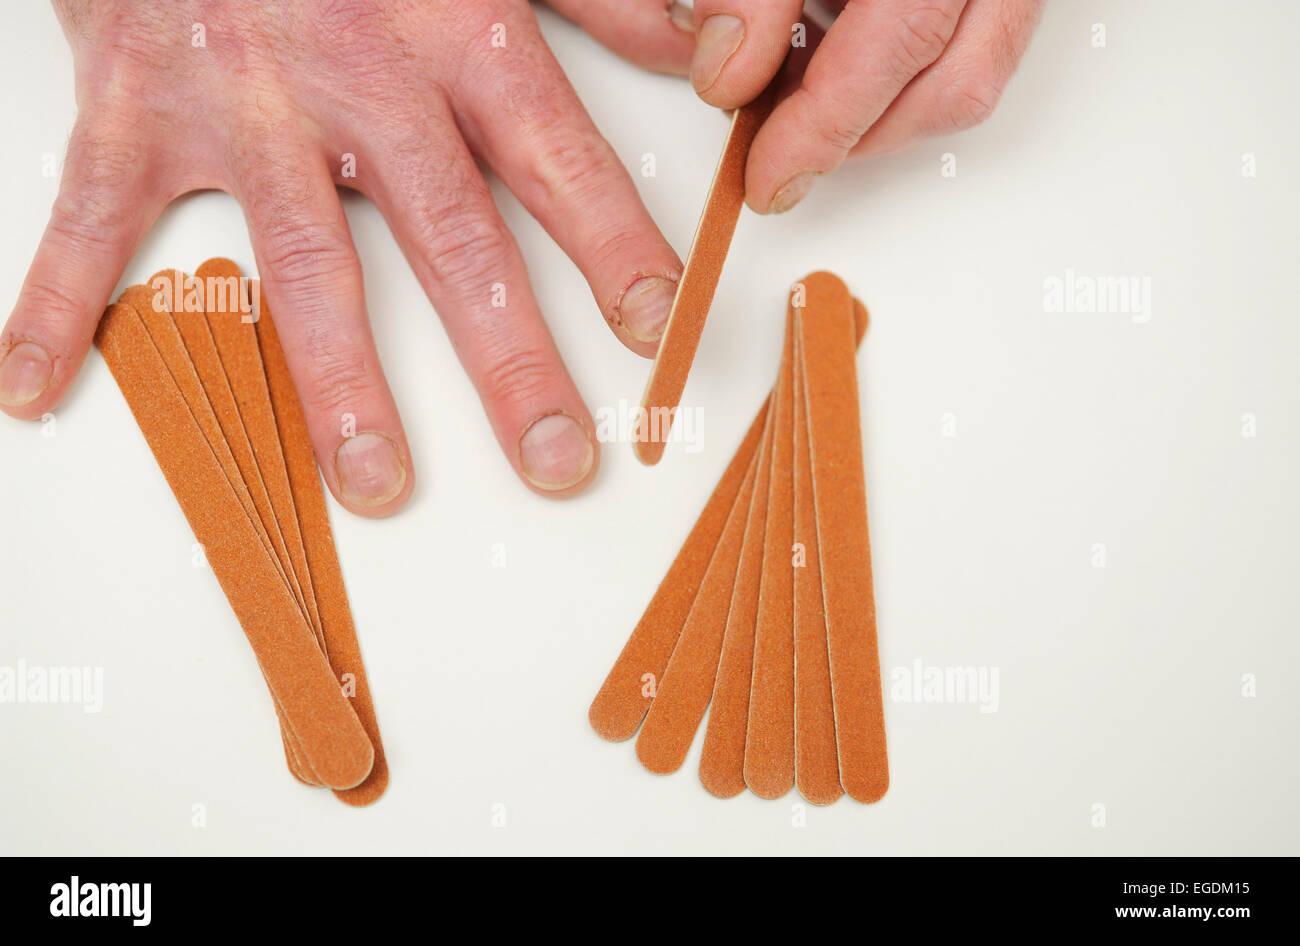 Man filing his nails Stock Photo